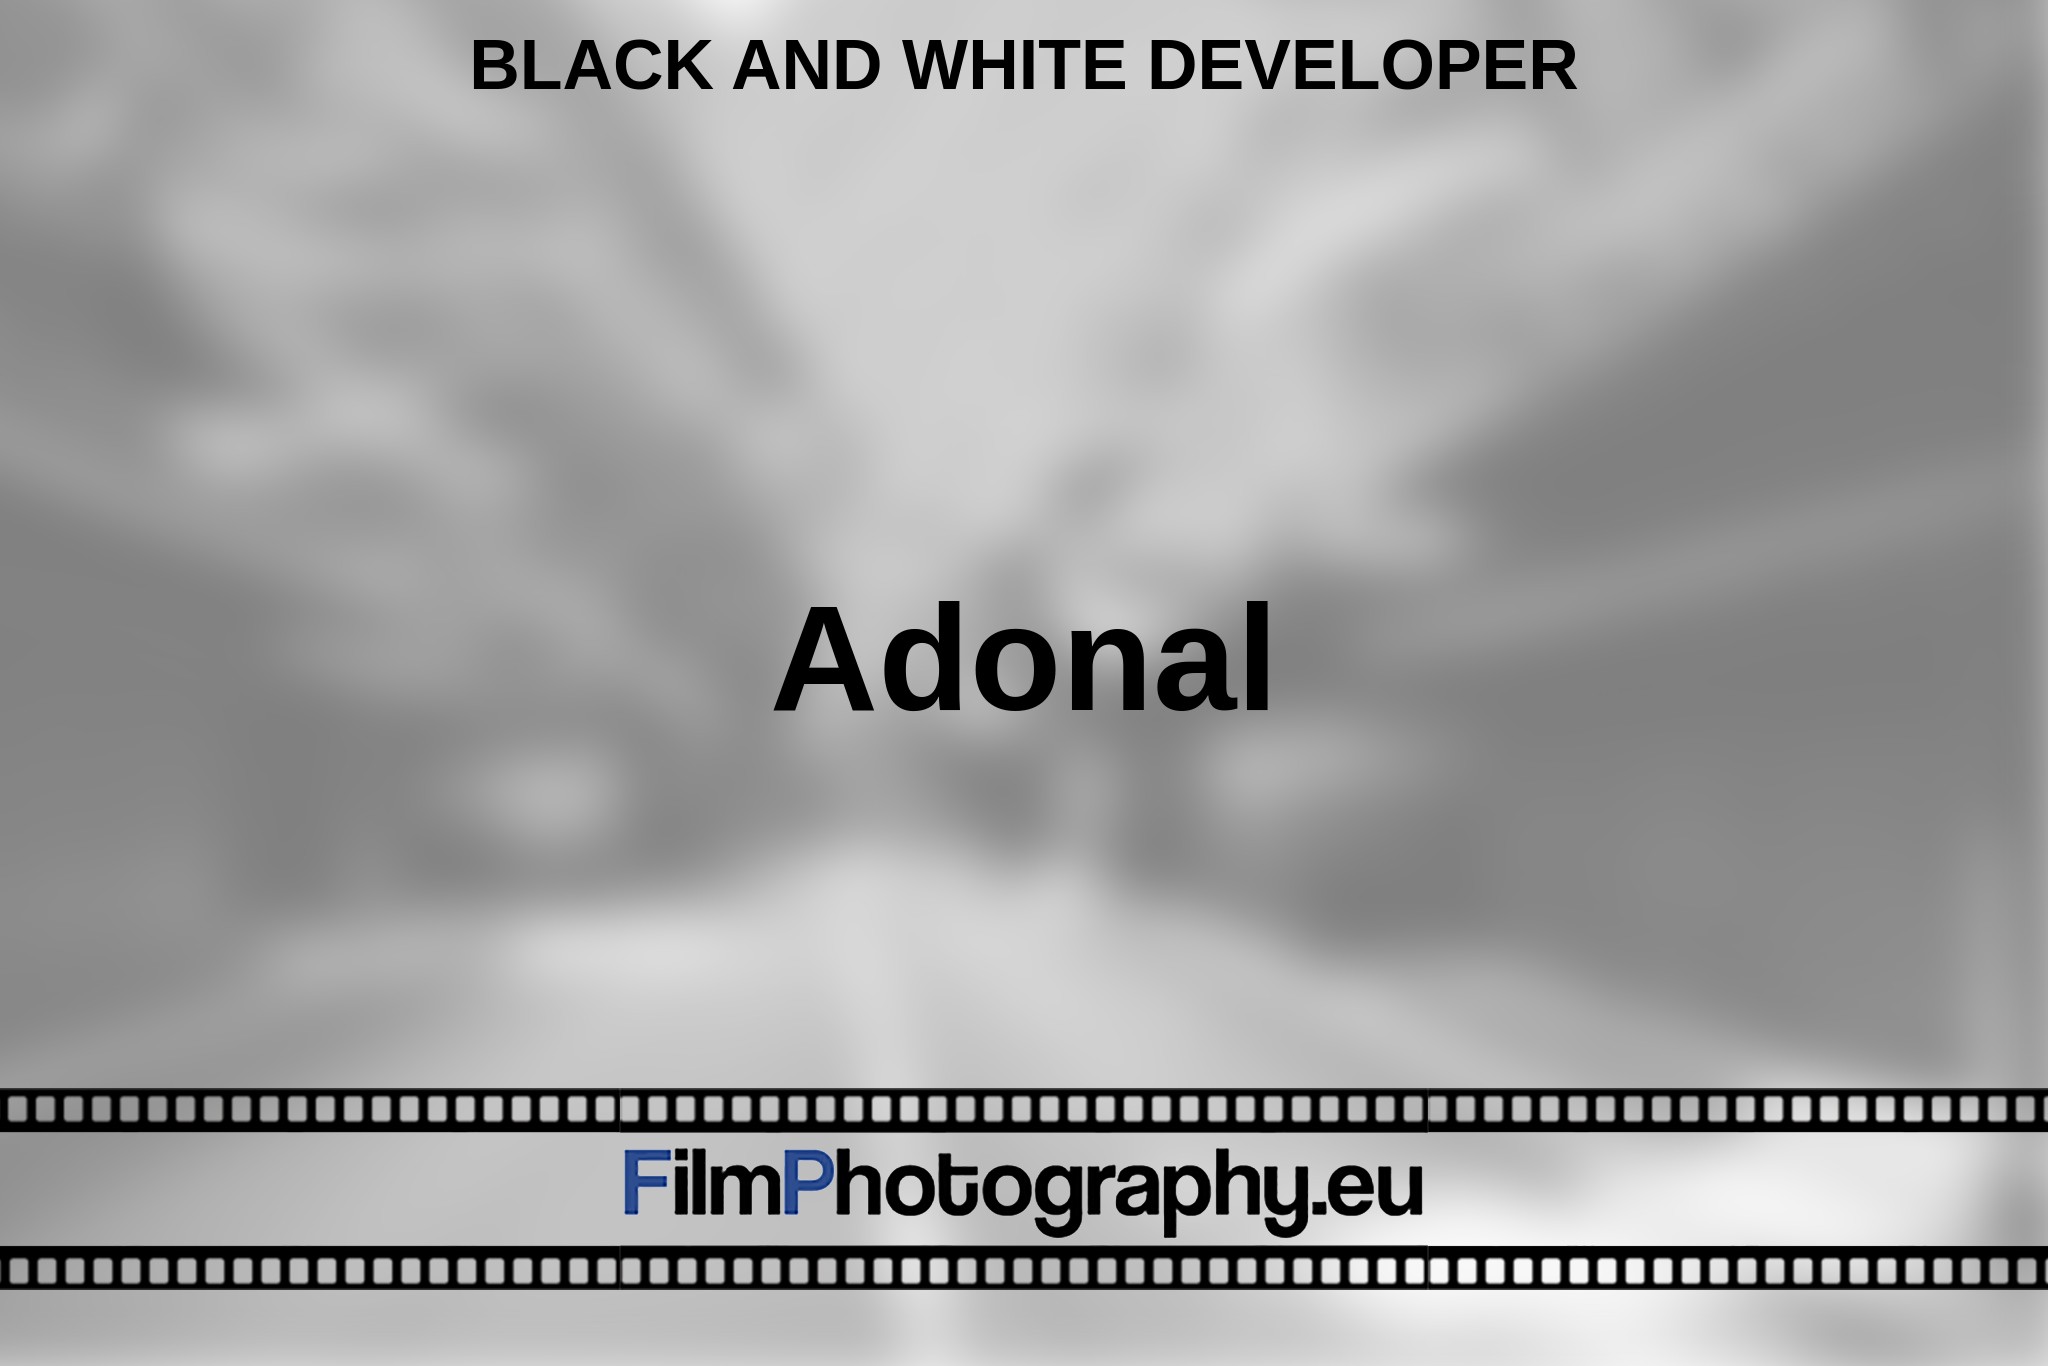 adonal-black-and-white-developer-bnv.jpg